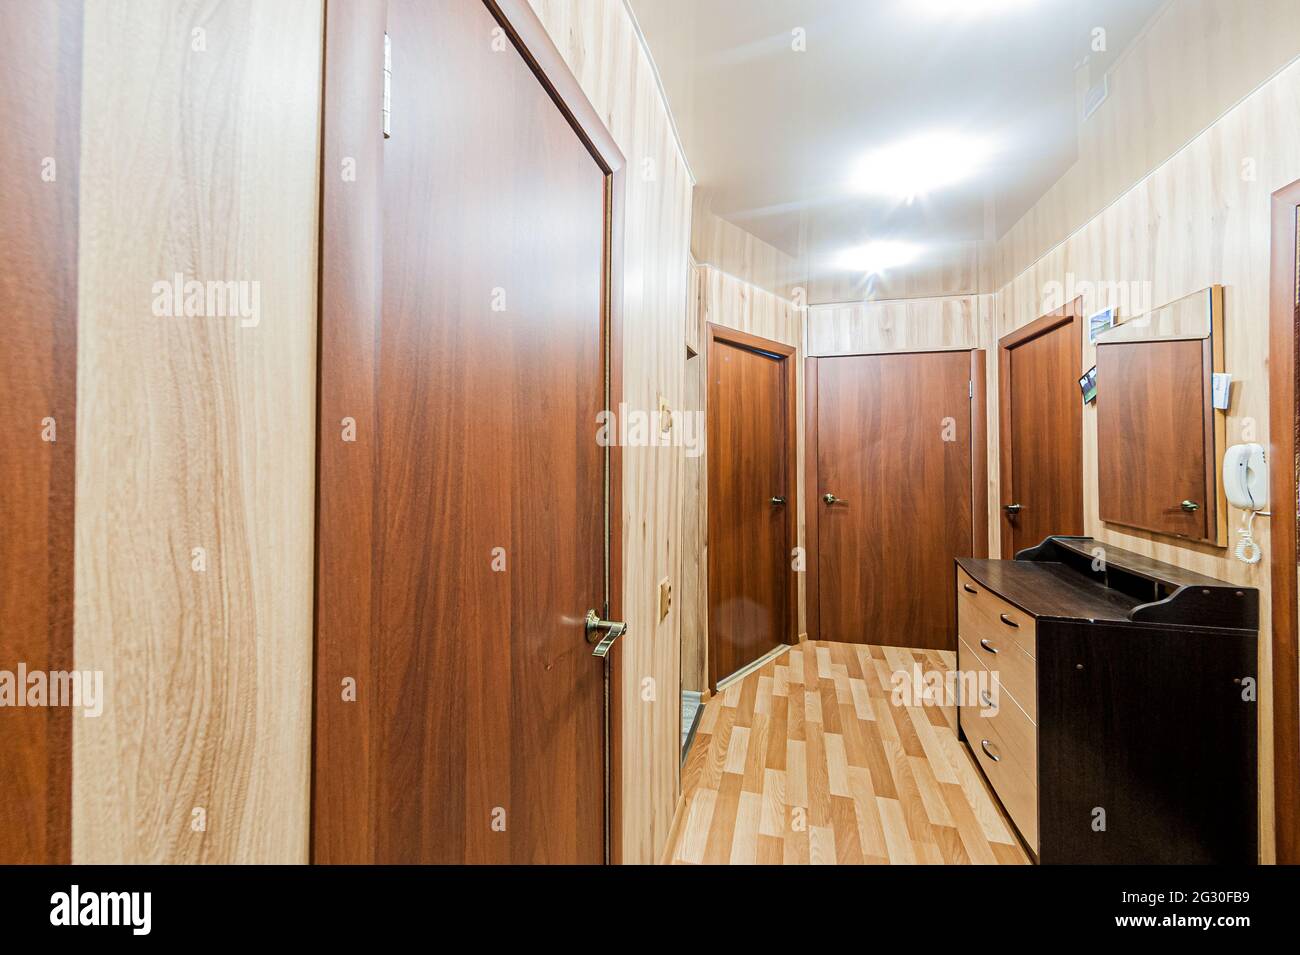 Russie, Moscou- 29 avril 2020: Chambre intérieure appartement moderne lumineux atmosphère cosy. nettoyage général, décoration, préparation de la maison pour sal Banque D'Images